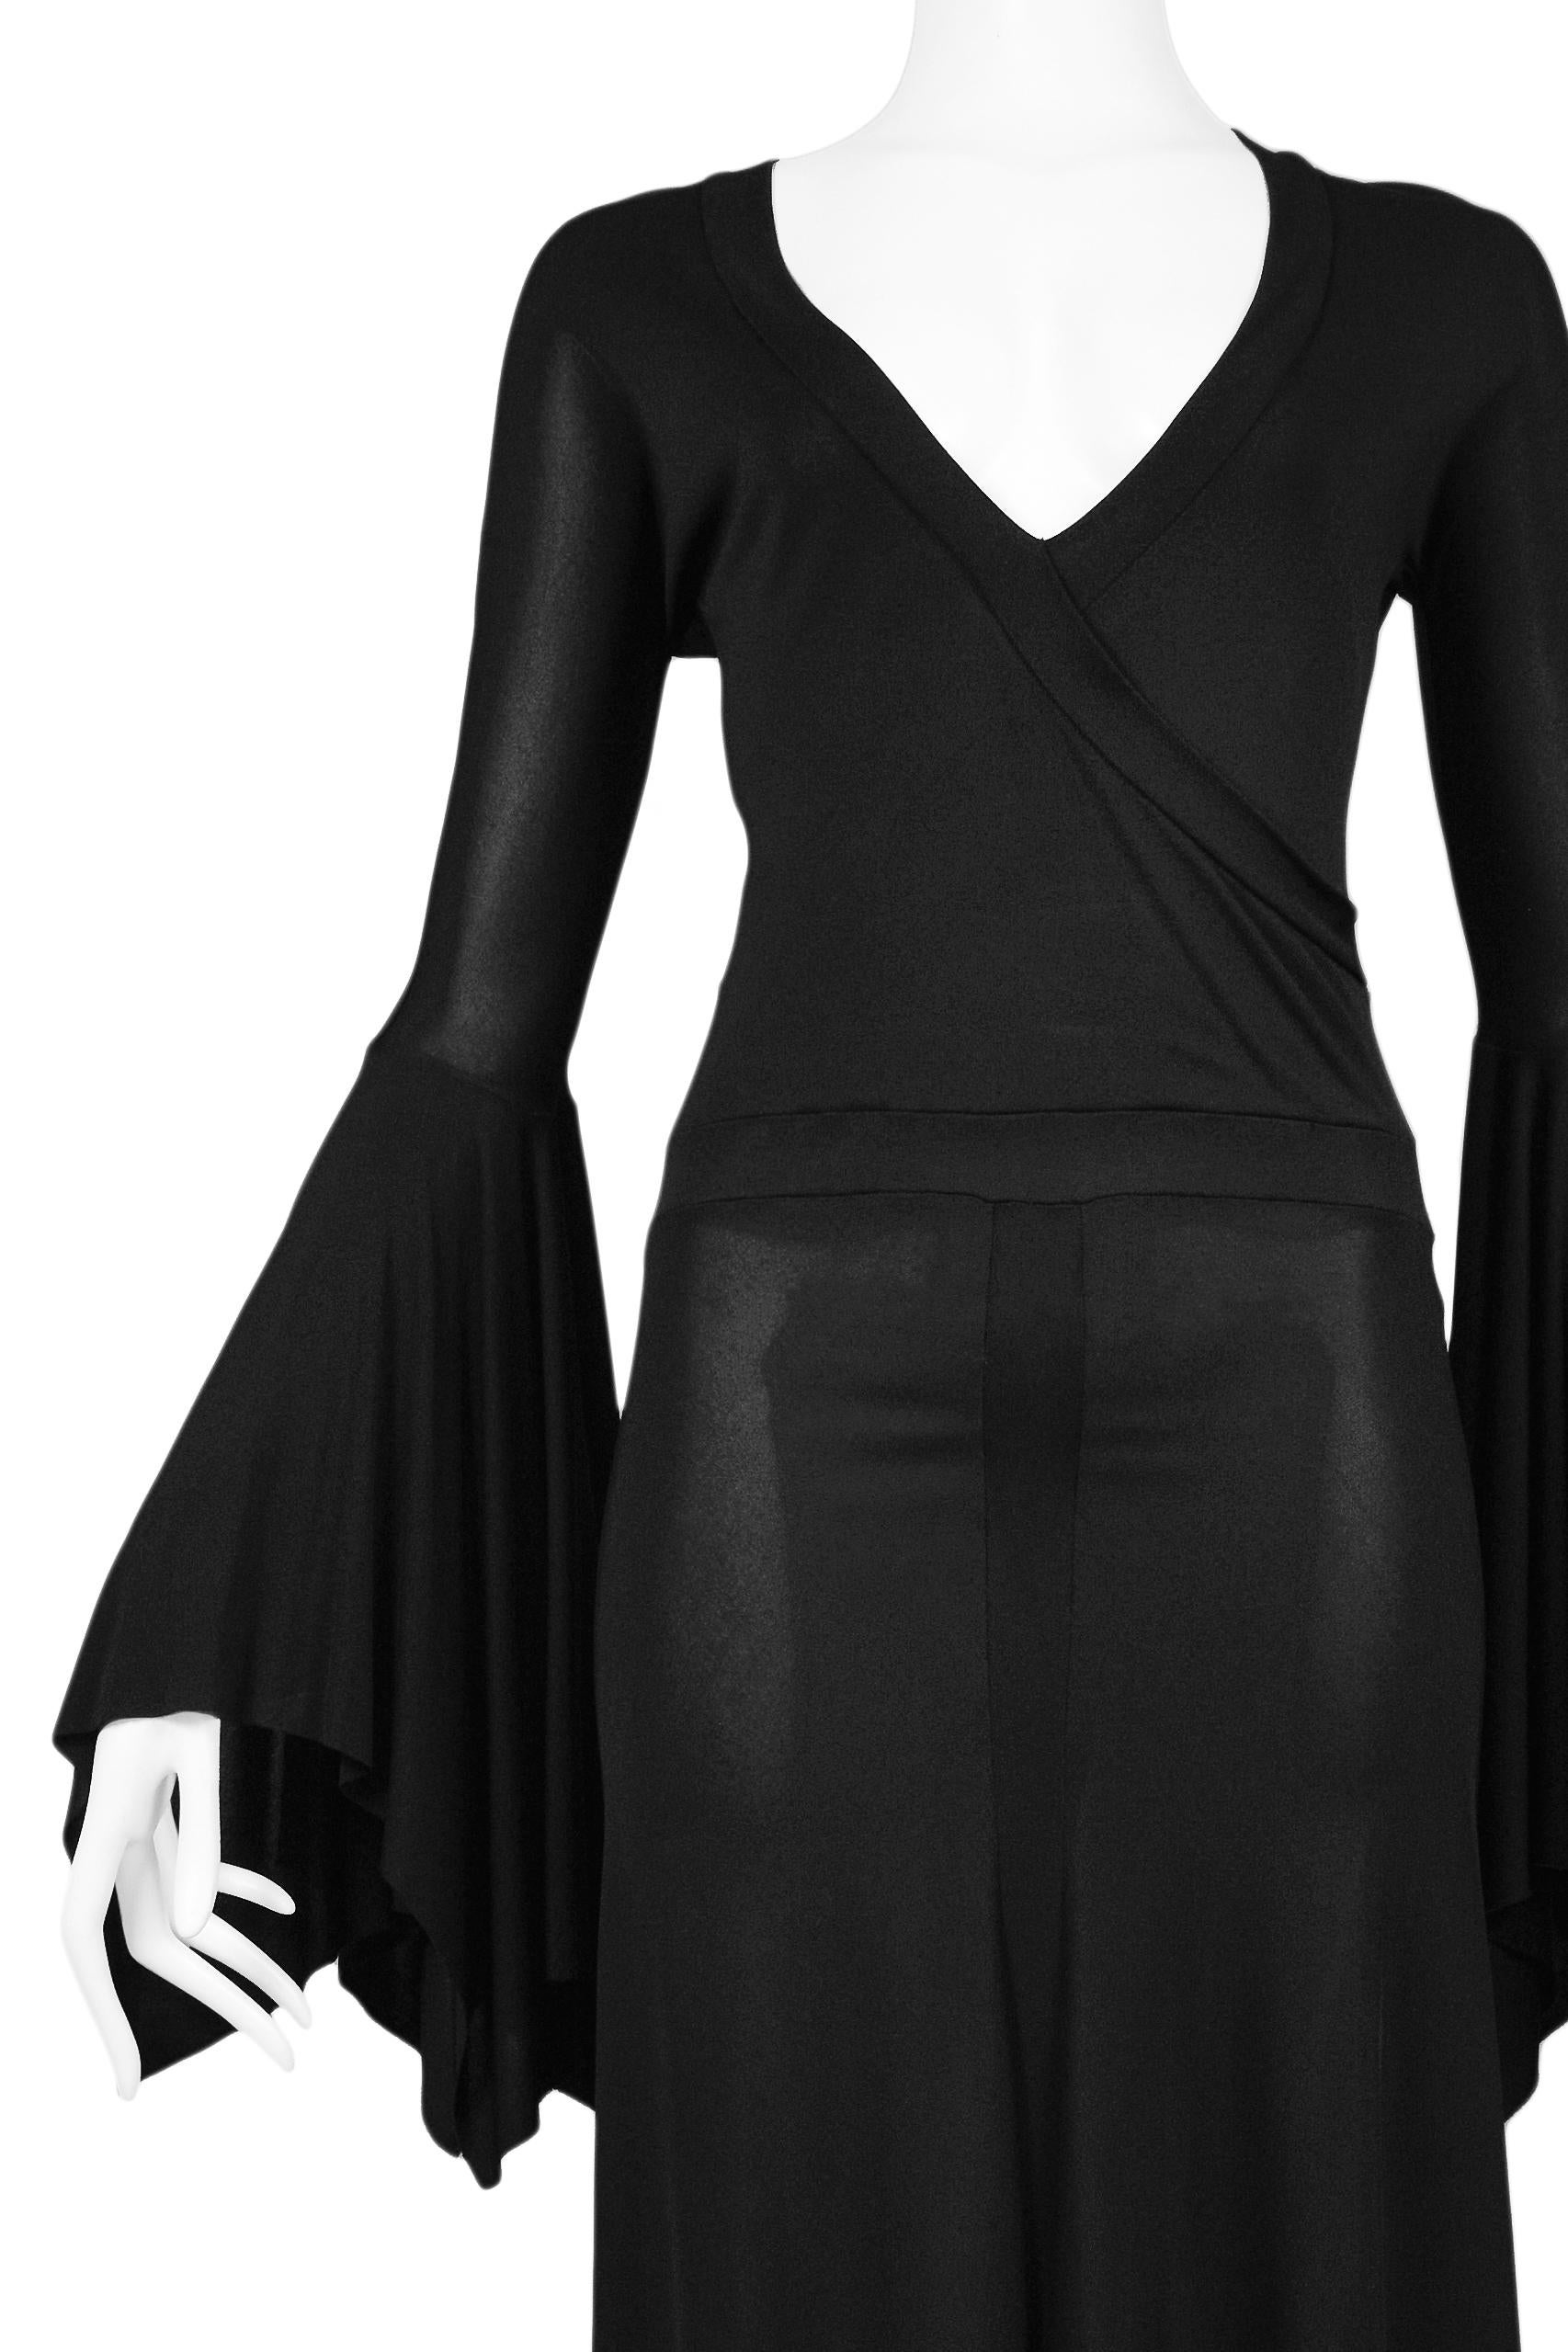 yves saint laurent black dress